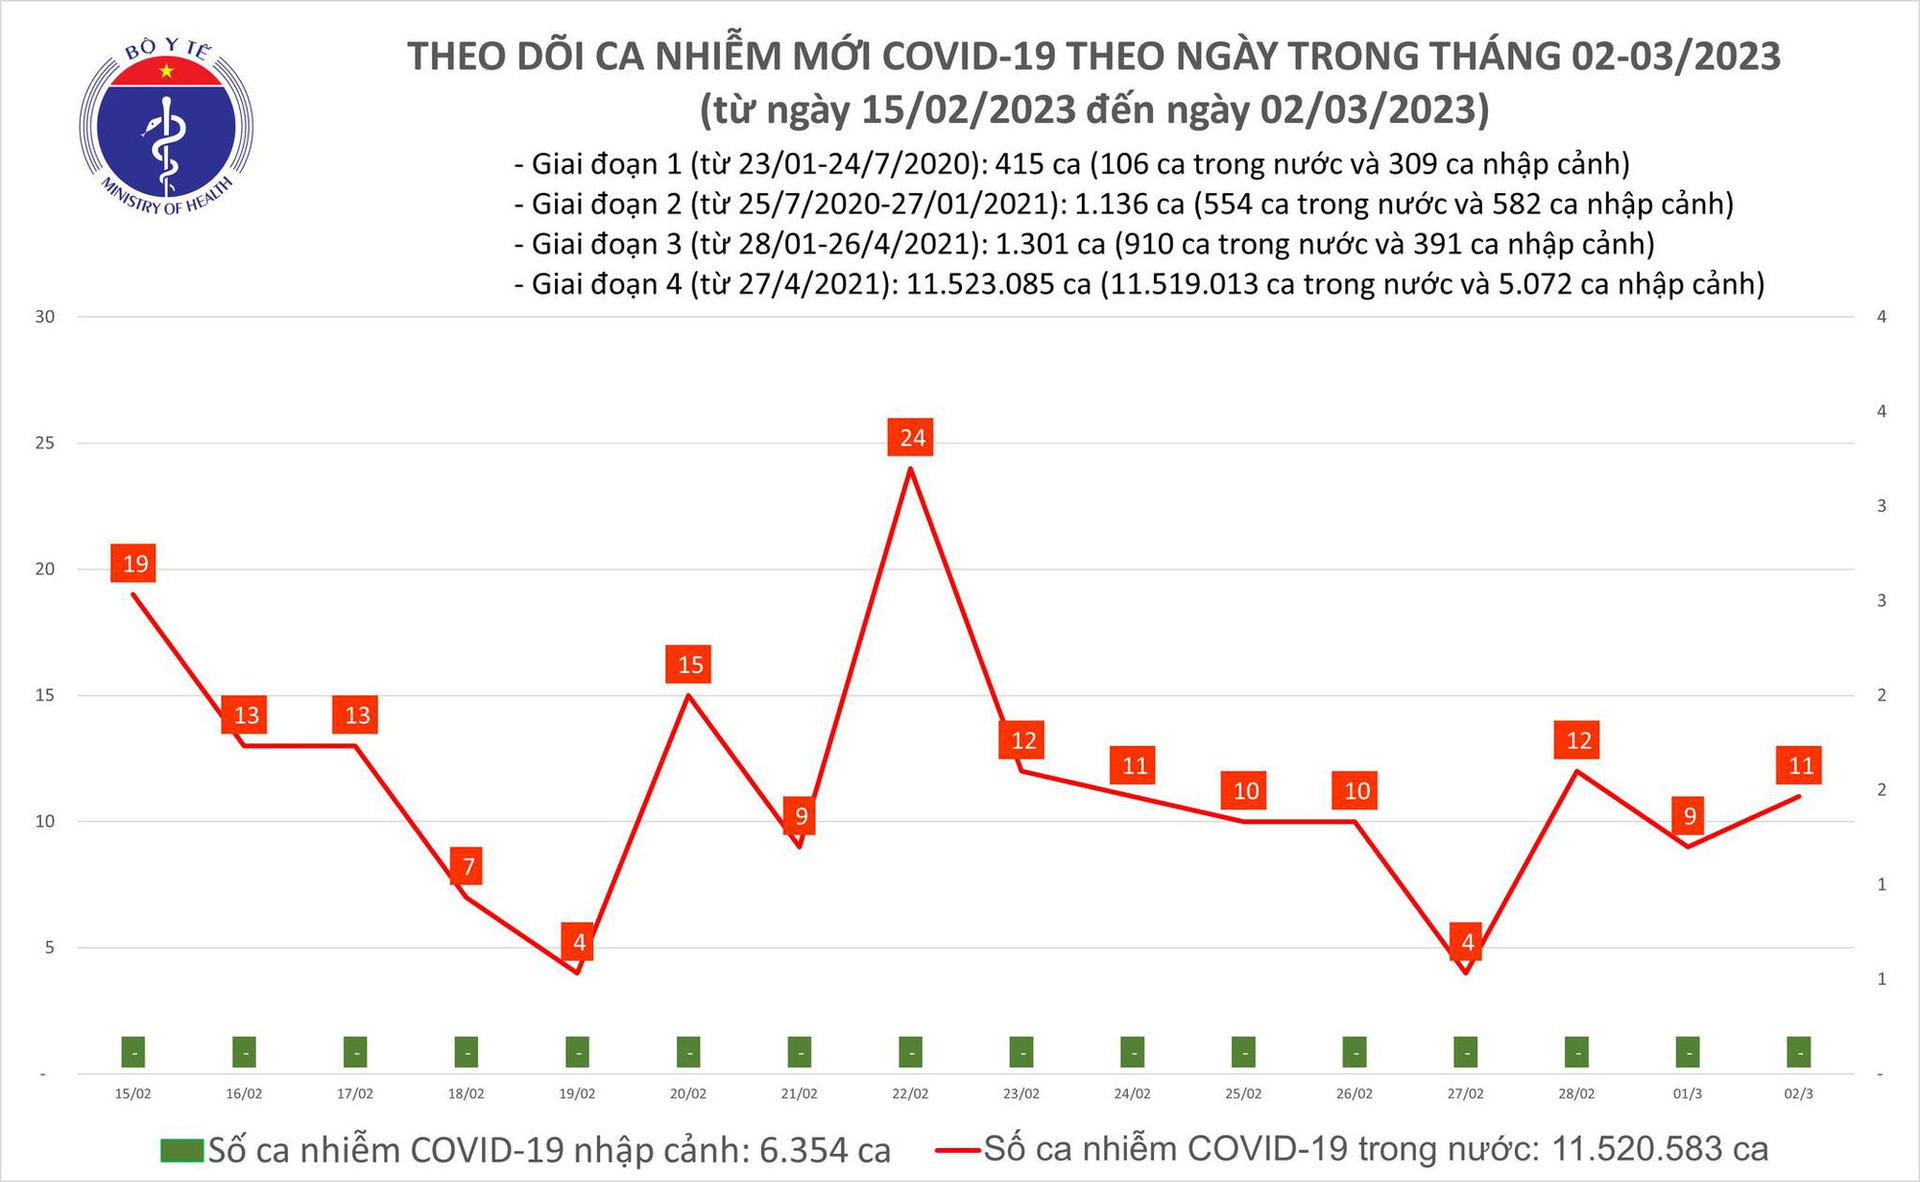 Ngày 2/2: Ca COVID-19 nhiều gần gấp 2 lần số khỏi bệnh - Ảnh 1.